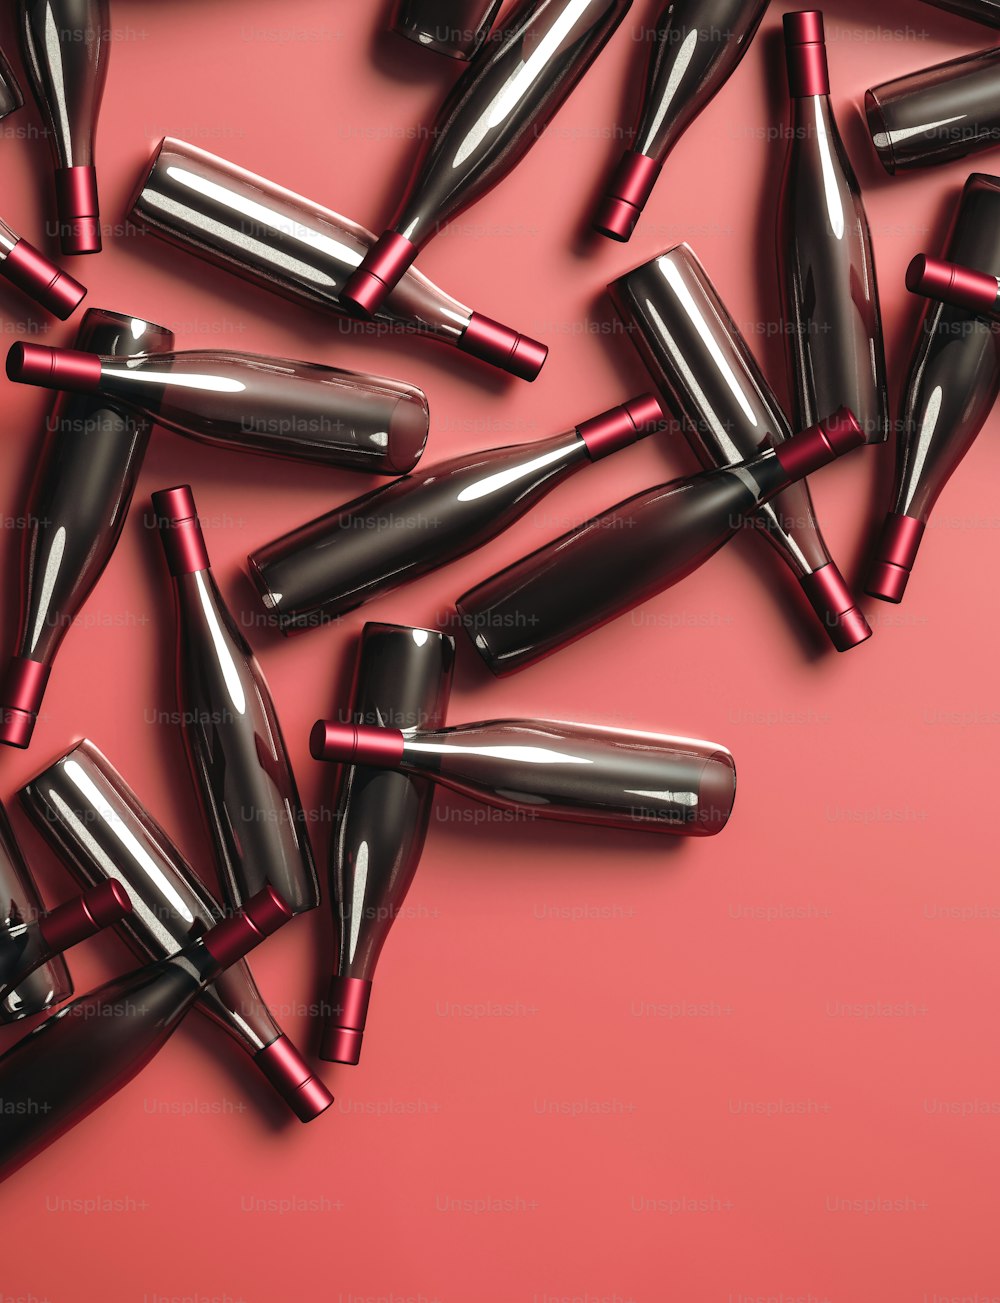 Un grupo de lápices labiales negros y rojos sobre un fondo rosa